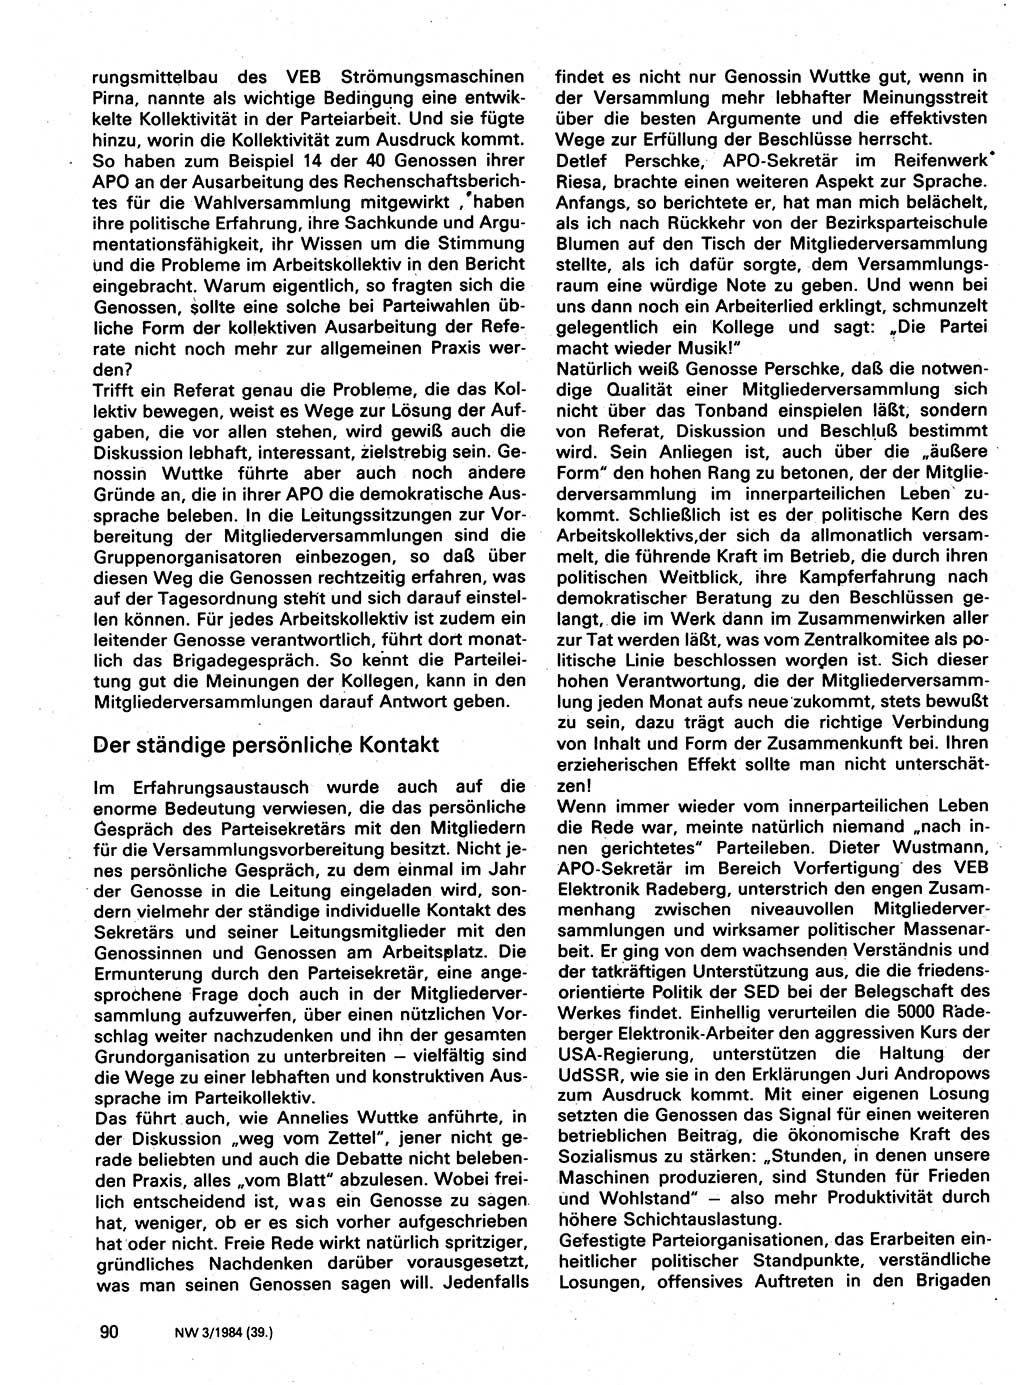 Neuer Weg (NW), Organ des Zentralkomitees (ZK) der SED (Sozialistische Einheitspartei Deutschlands) für Fragen des Parteilebens, 39. Jahrgang [Deutsche Demokratische Republik (DDR)] 1984, Seite 90 (NW ZK SED DDR 1984, S. 90)